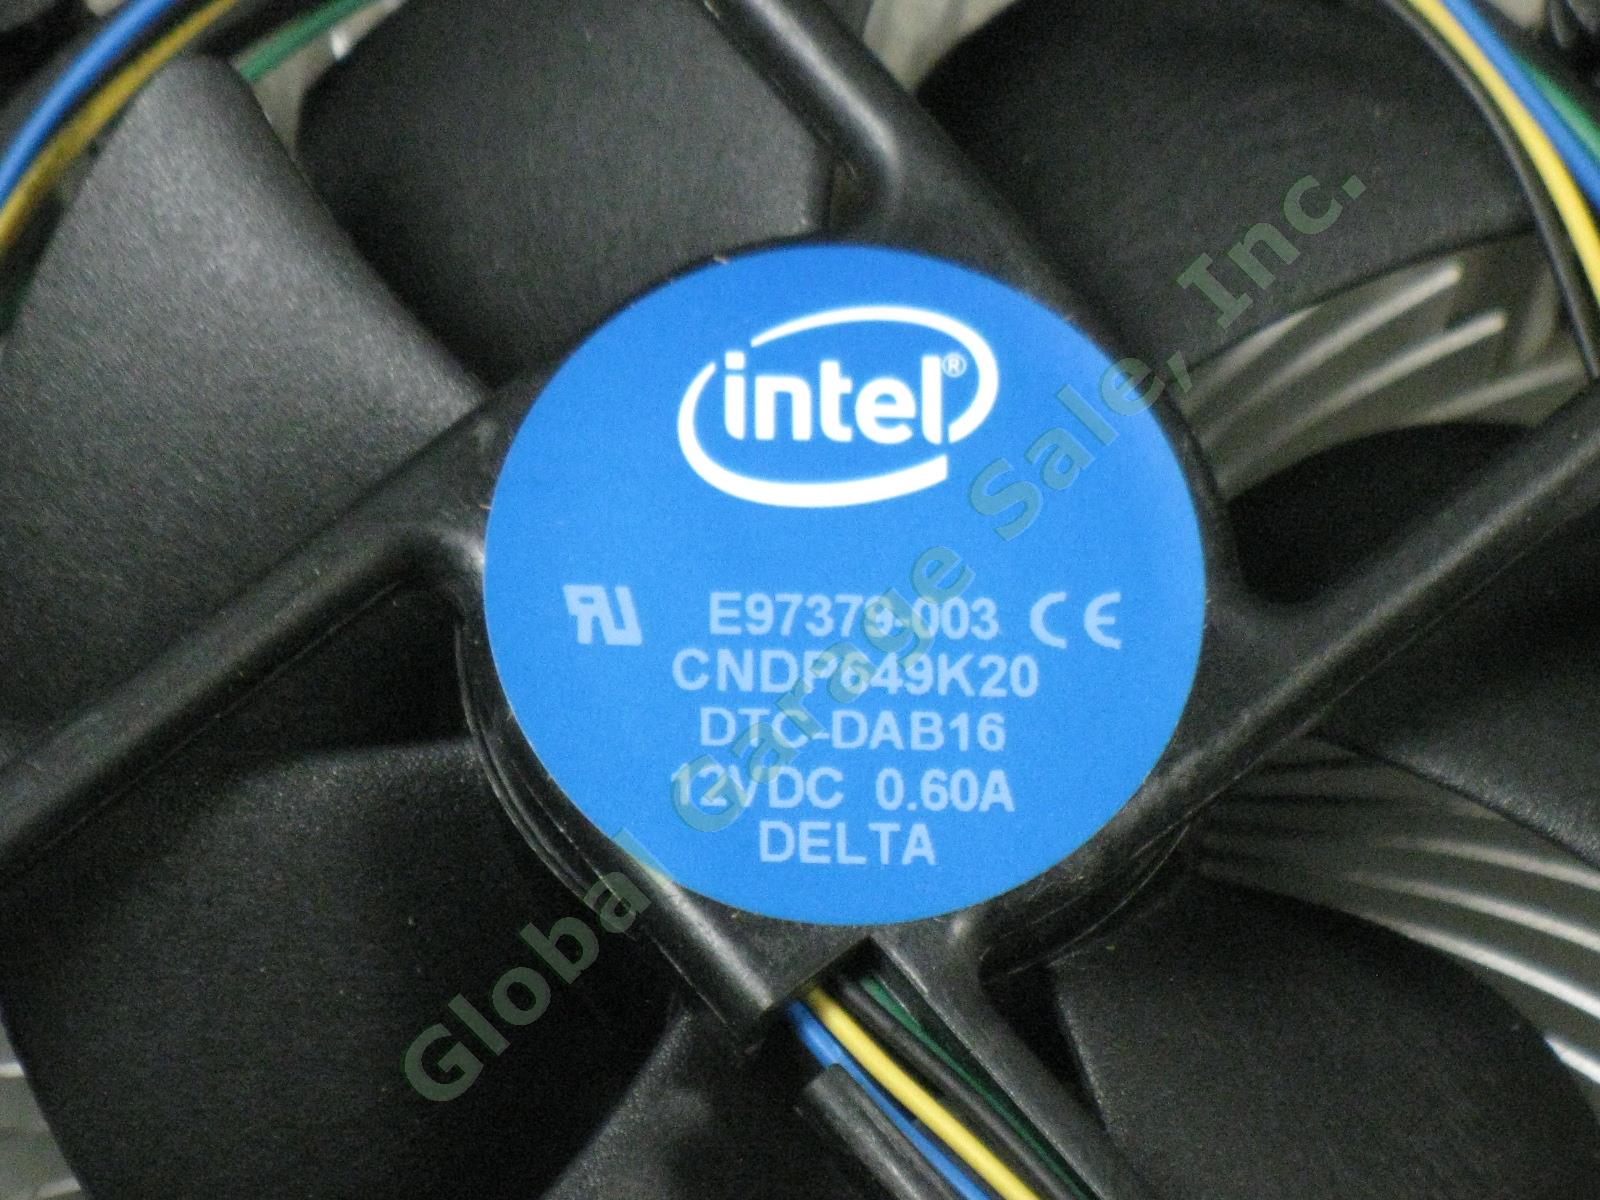 20 NEW Intel E97379-003 CPU Heatsink Cooler Cooling Fan Lot i3 i5 i7 LGA1151 3